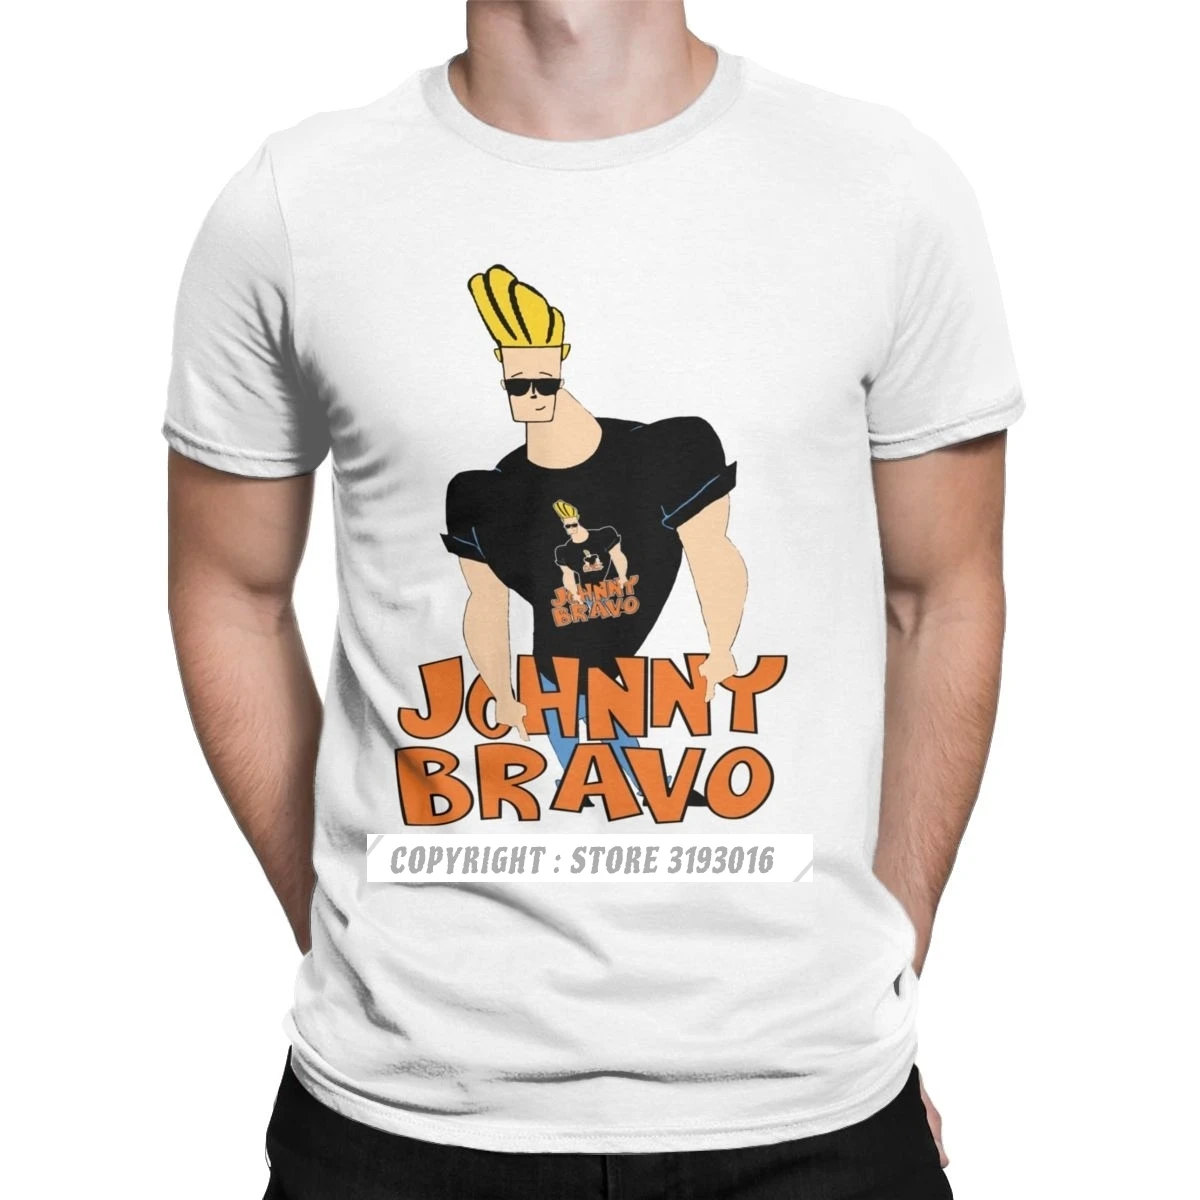 Johnny Bravo Tshirts Crazy T-Shirts O Neck Pretty Glasses Sweatshirt Men's Fashion Tops & Tees Christmas Tee Shirt EU Size